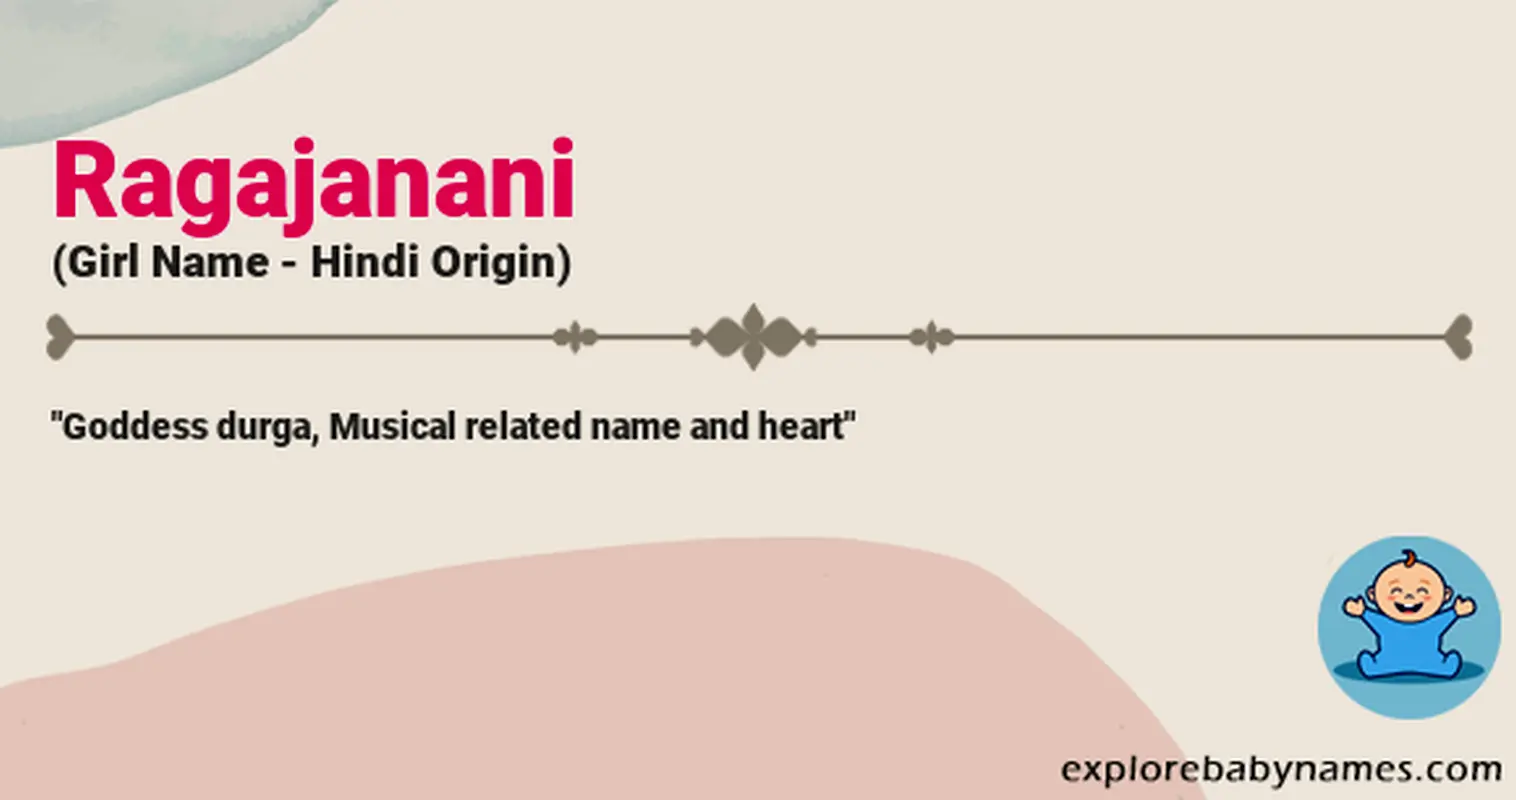 Meaning of Ragajanani